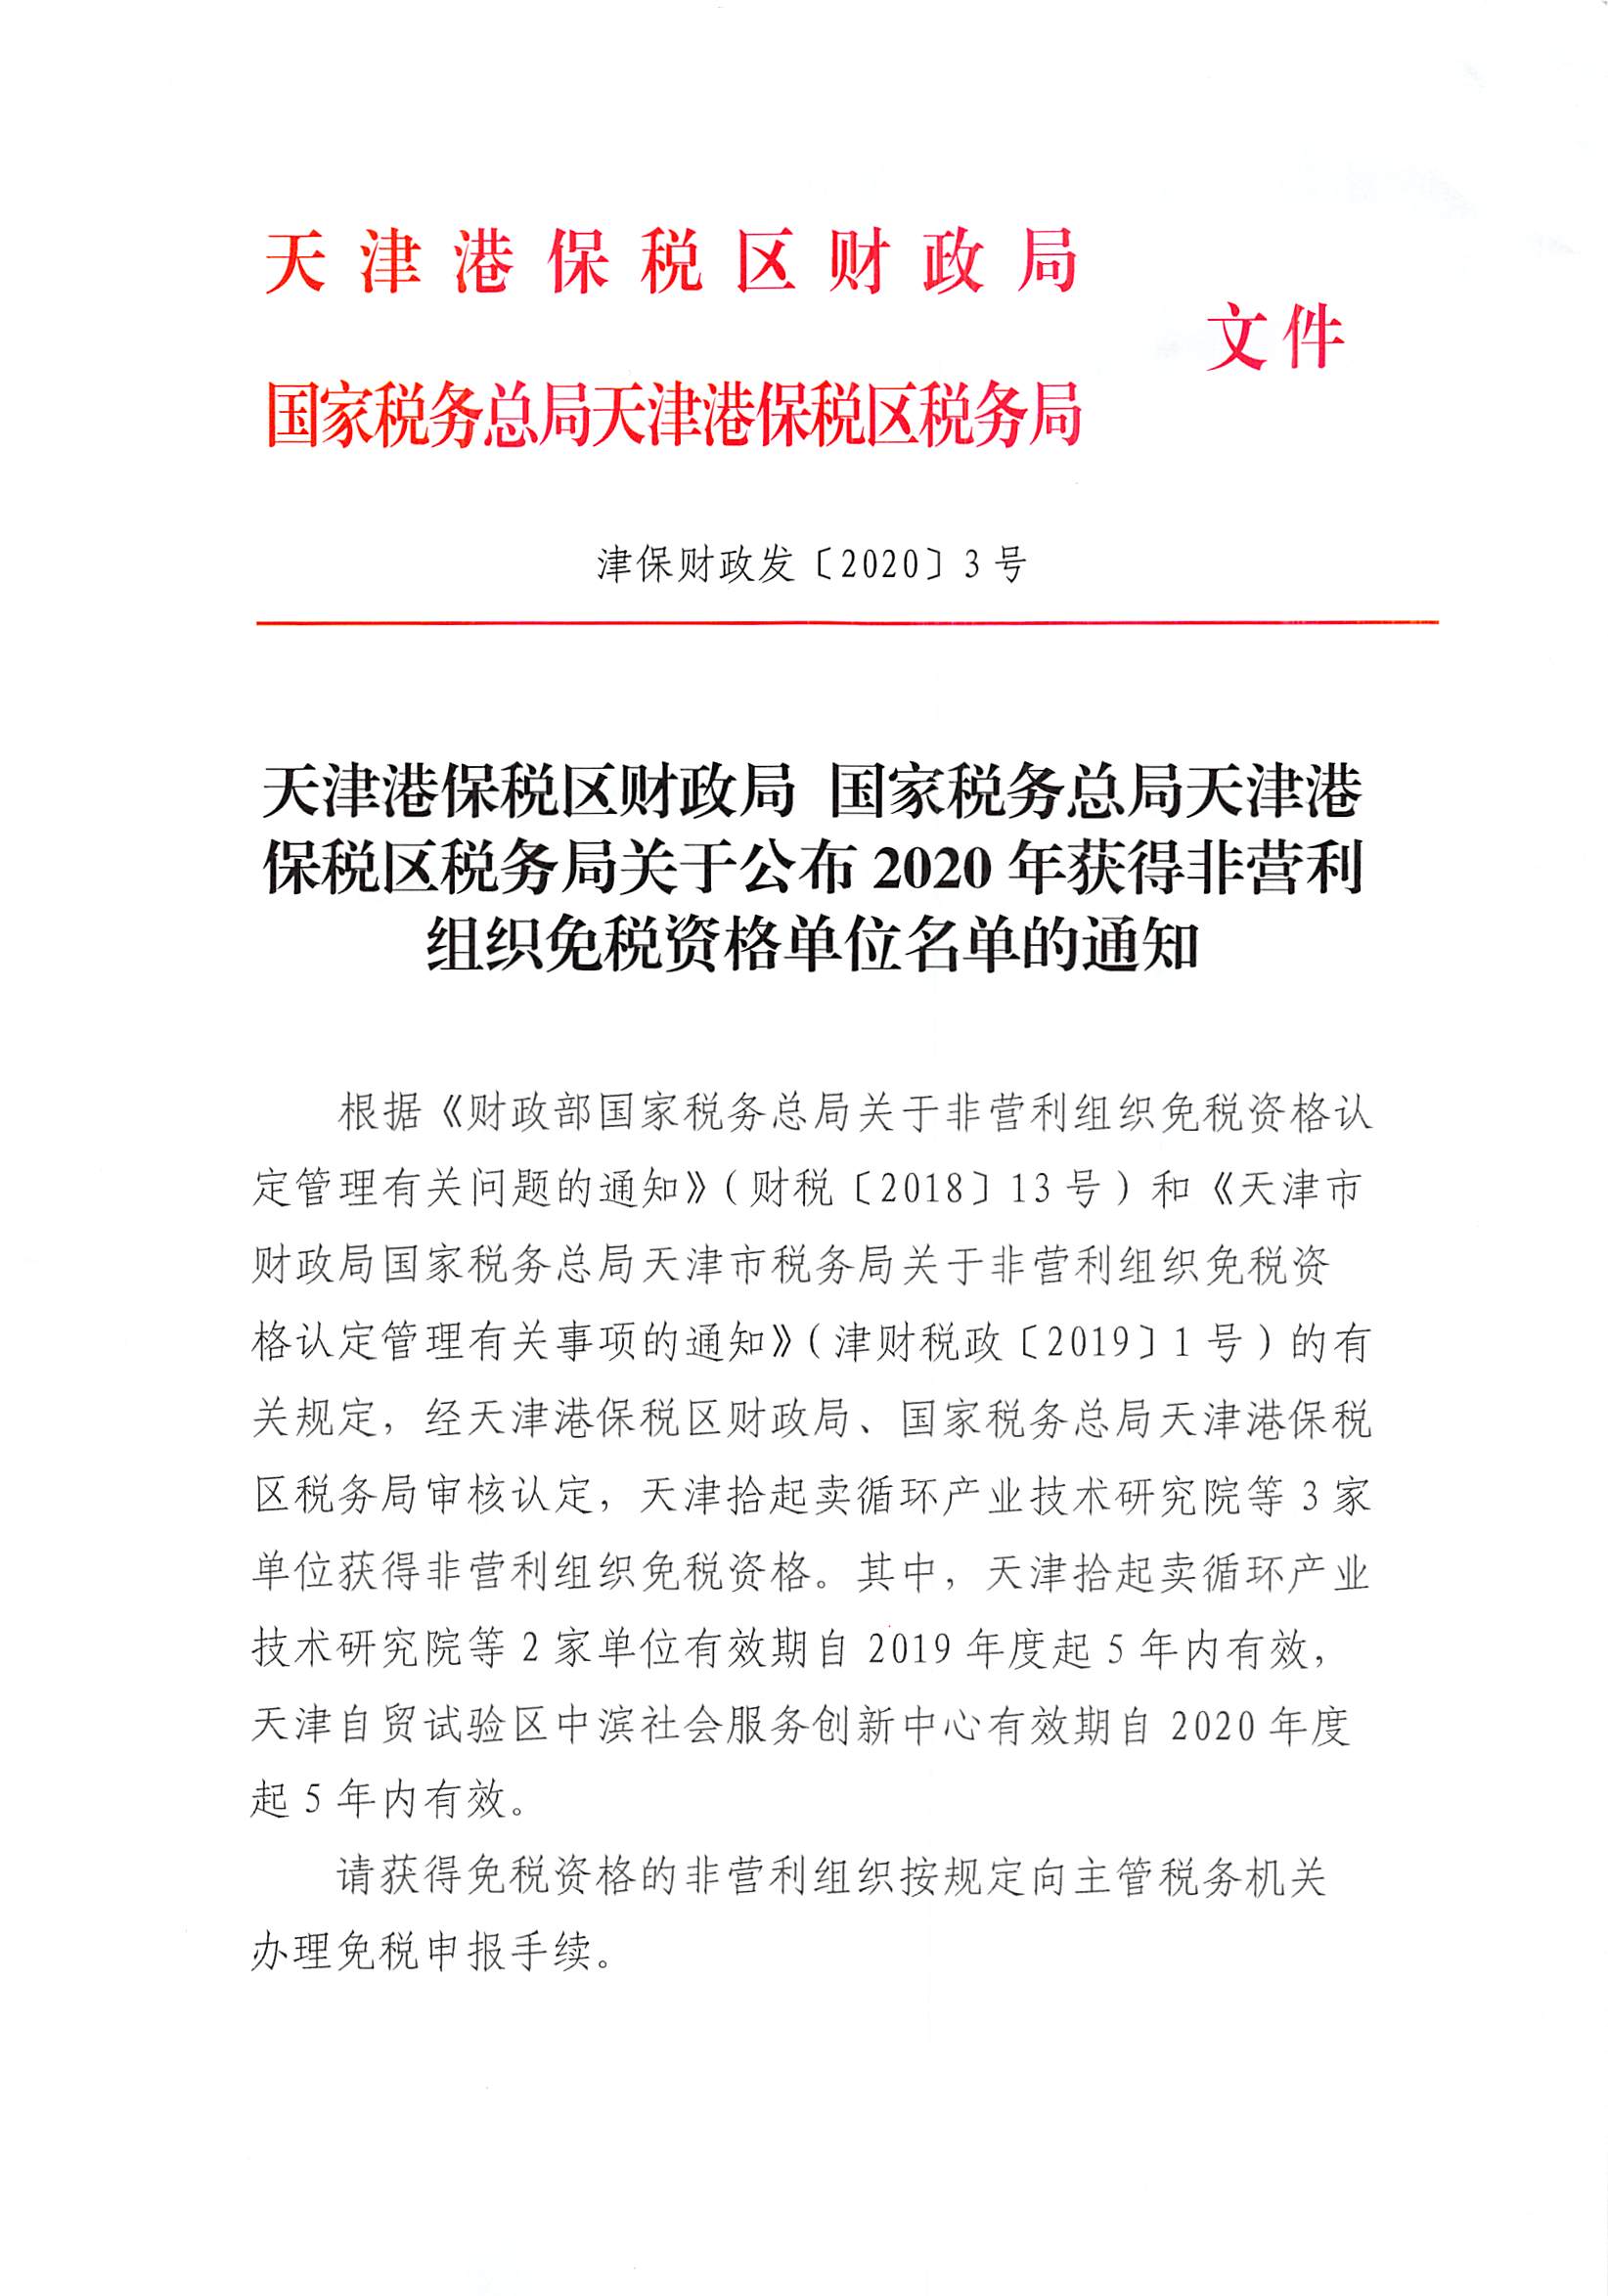 津政发[2019]18号：天津市人民政府关于修改和废止部分行政规范性文件的通知